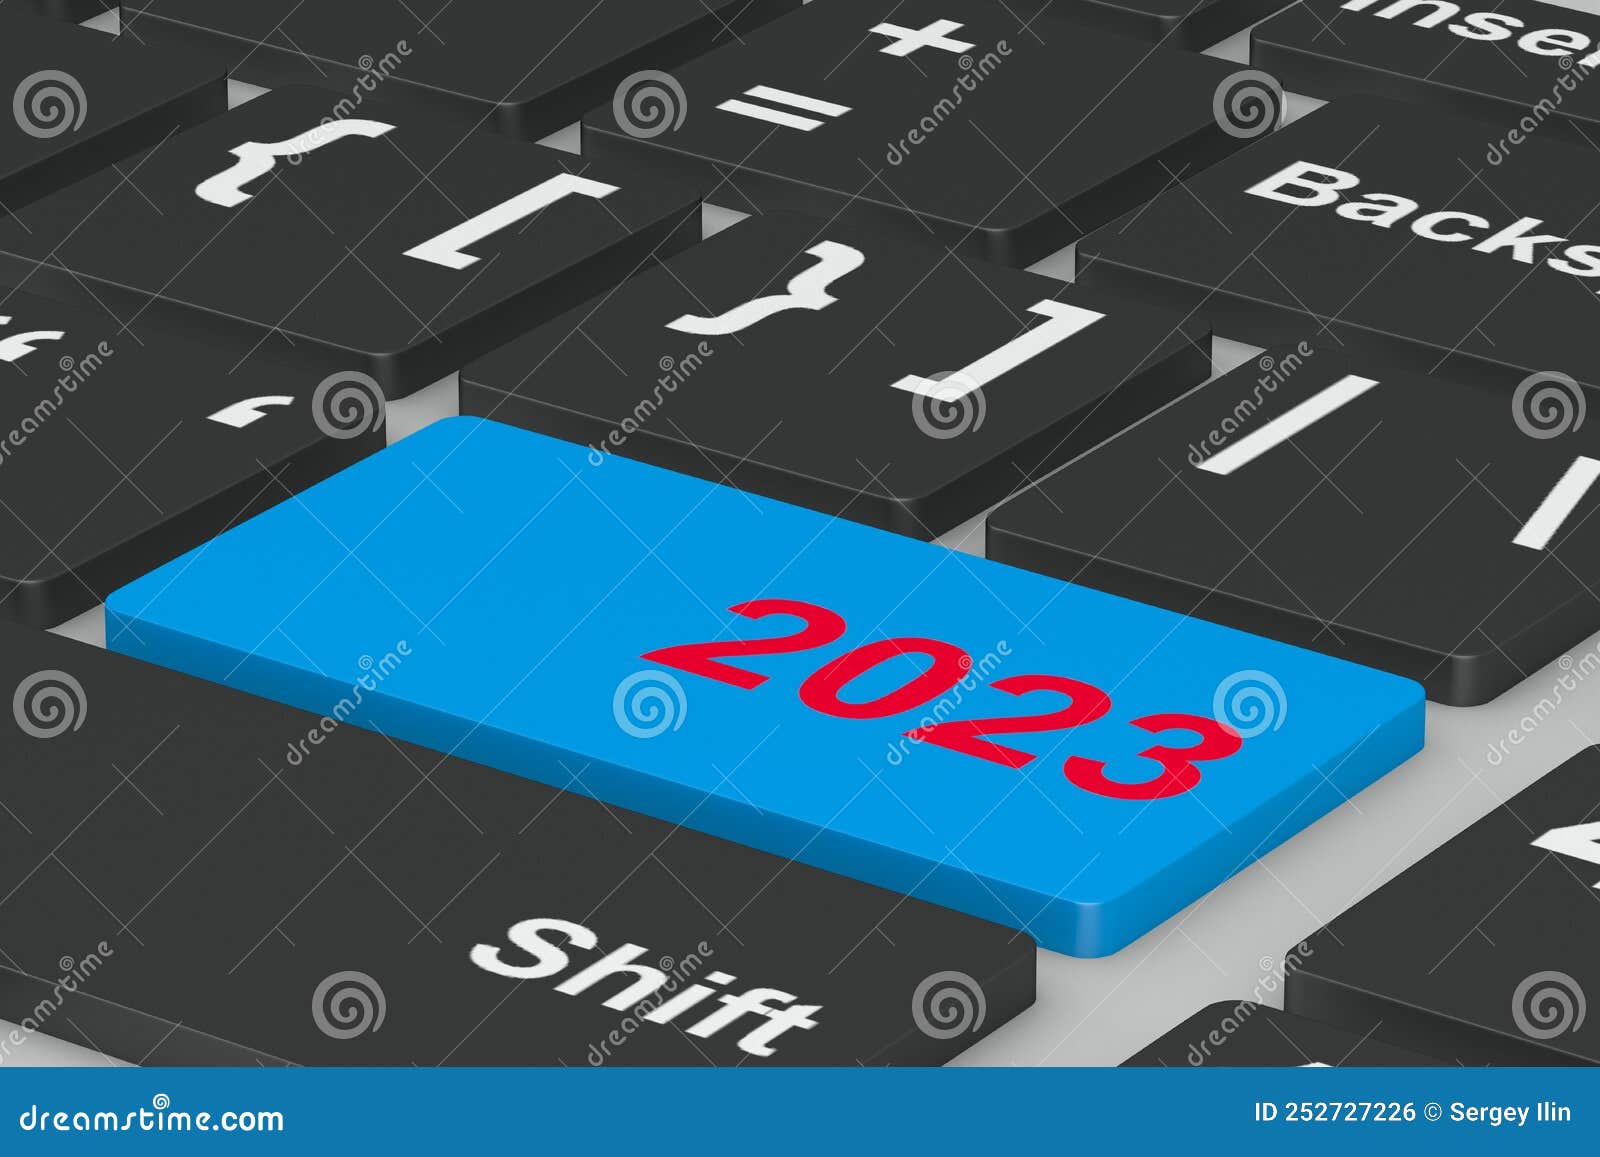 Button 2023 on Keyboard. 3D Illustration Stock Illustration ...